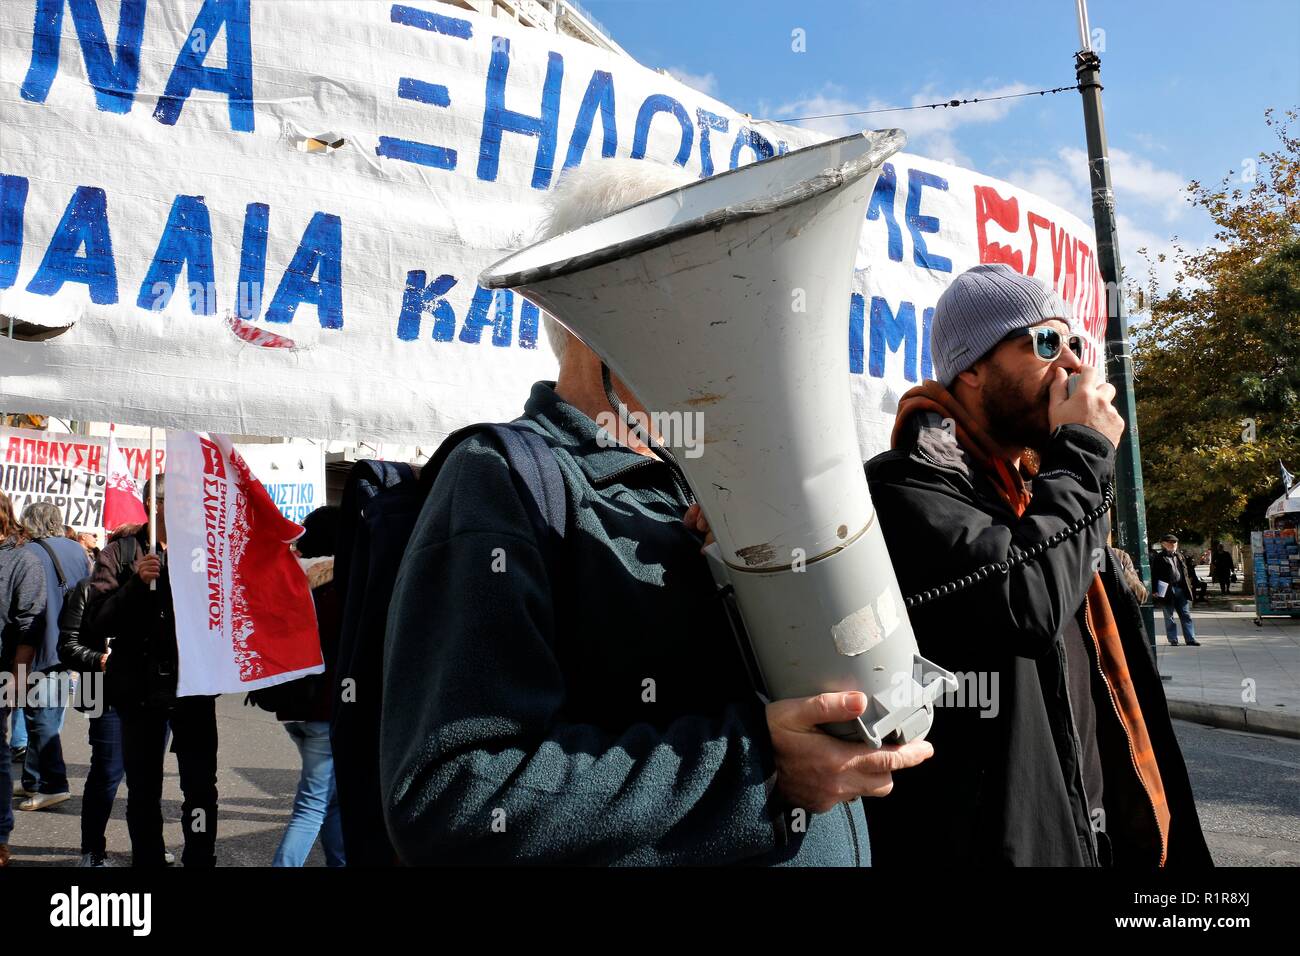 Vu un manifestant scandant des slogans sur un méga phone pendant la grève. Les Syndicats grecs et privé de Russie protester contre de nouvelles mesures d'austérité et aussi la demande pour un meilleur salaire et la modification du projet d'assurance. Banque D'Images